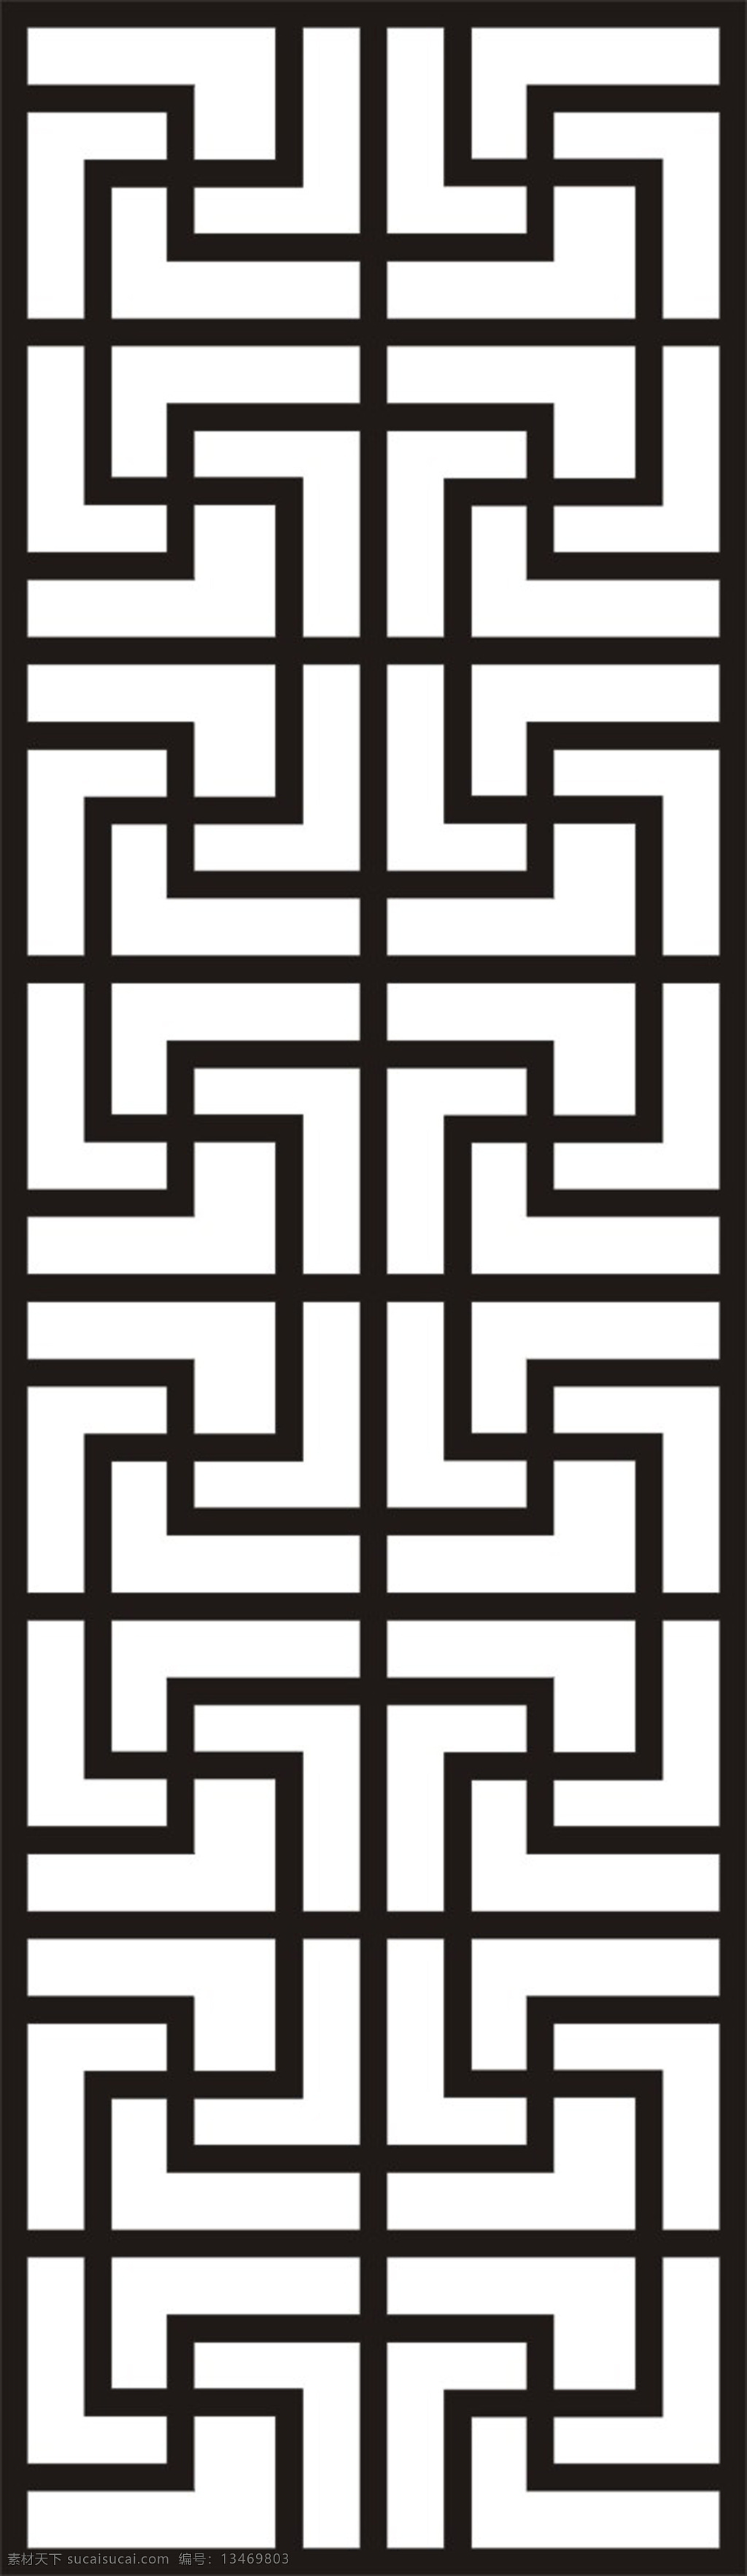 镂空花格 镂空 黑白 图纹 美观 大方 传统文化 文化艺术